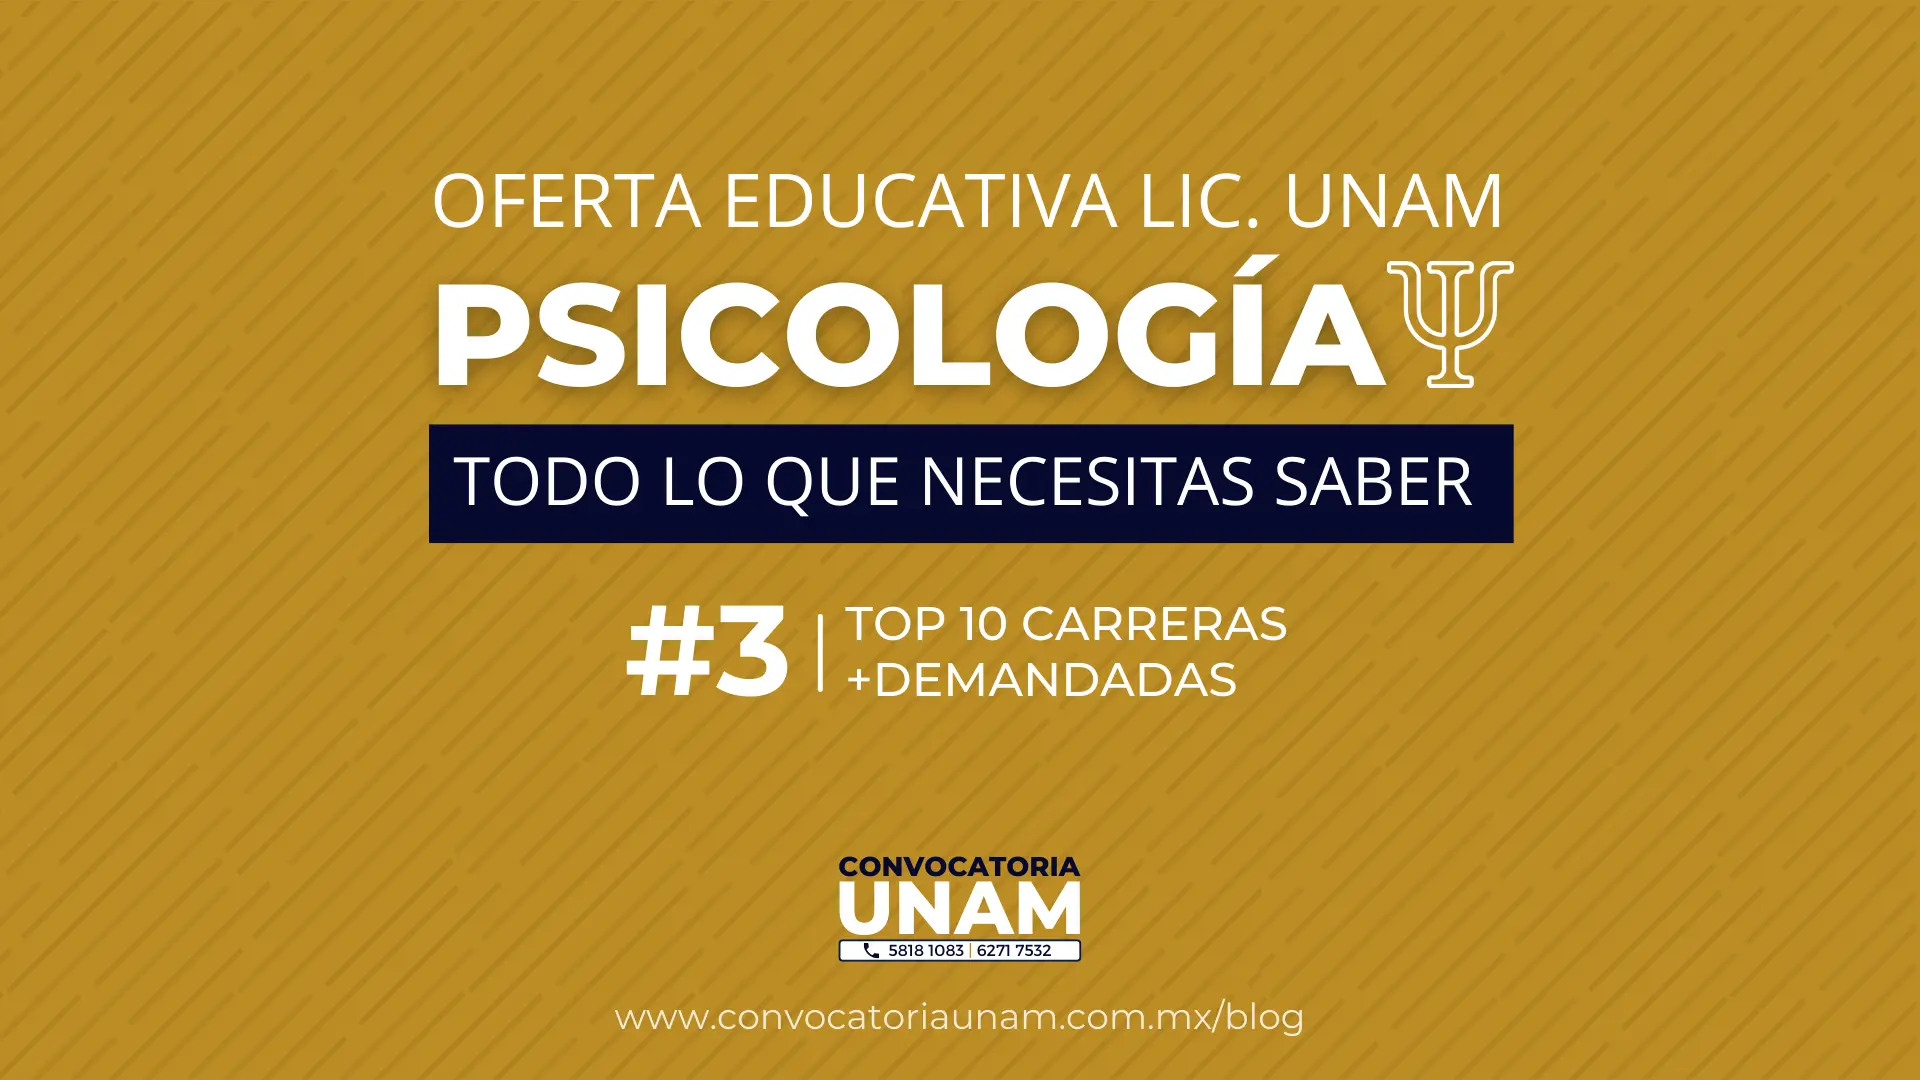 licenciatura en psicologia en linea unam - Cuáles son las carreras en línea de la UNAM